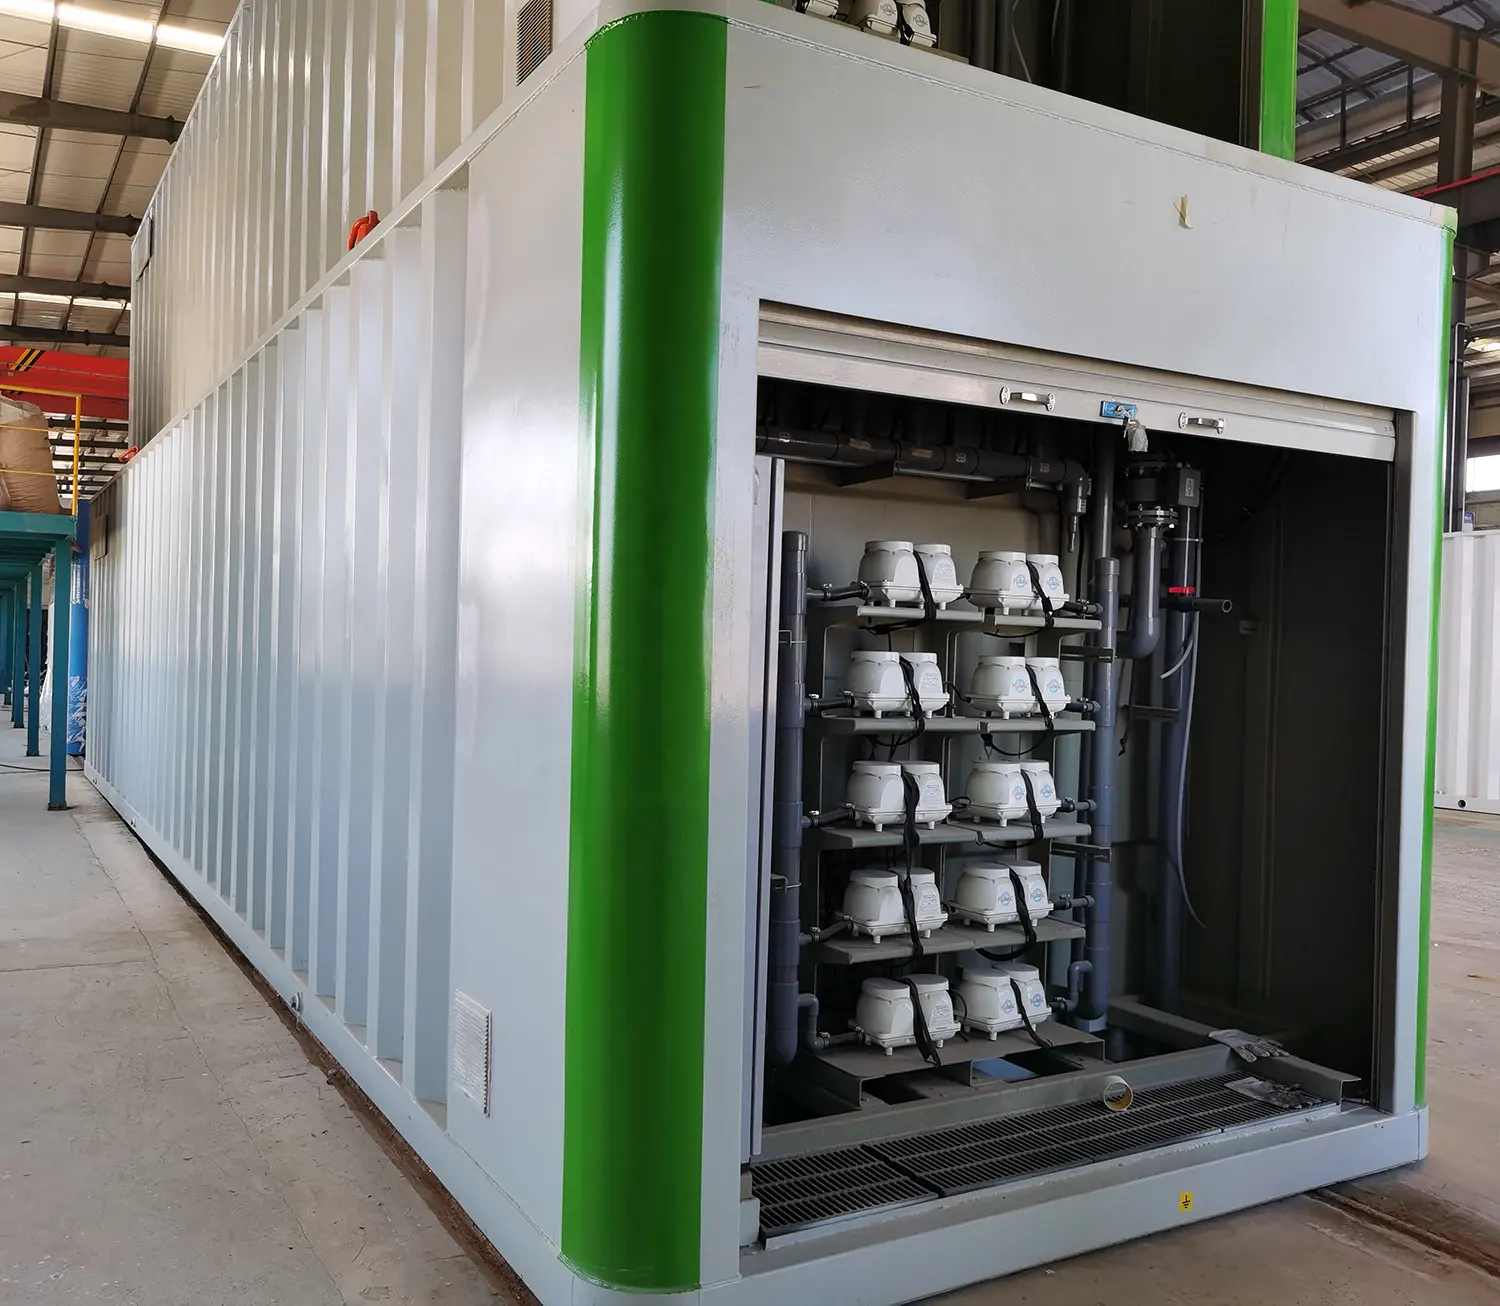 Mmbr ha containerizzato il sistema dell'impianto di trattamento delle acque reflue del pacchetto di macellazione e trattamento del pollame